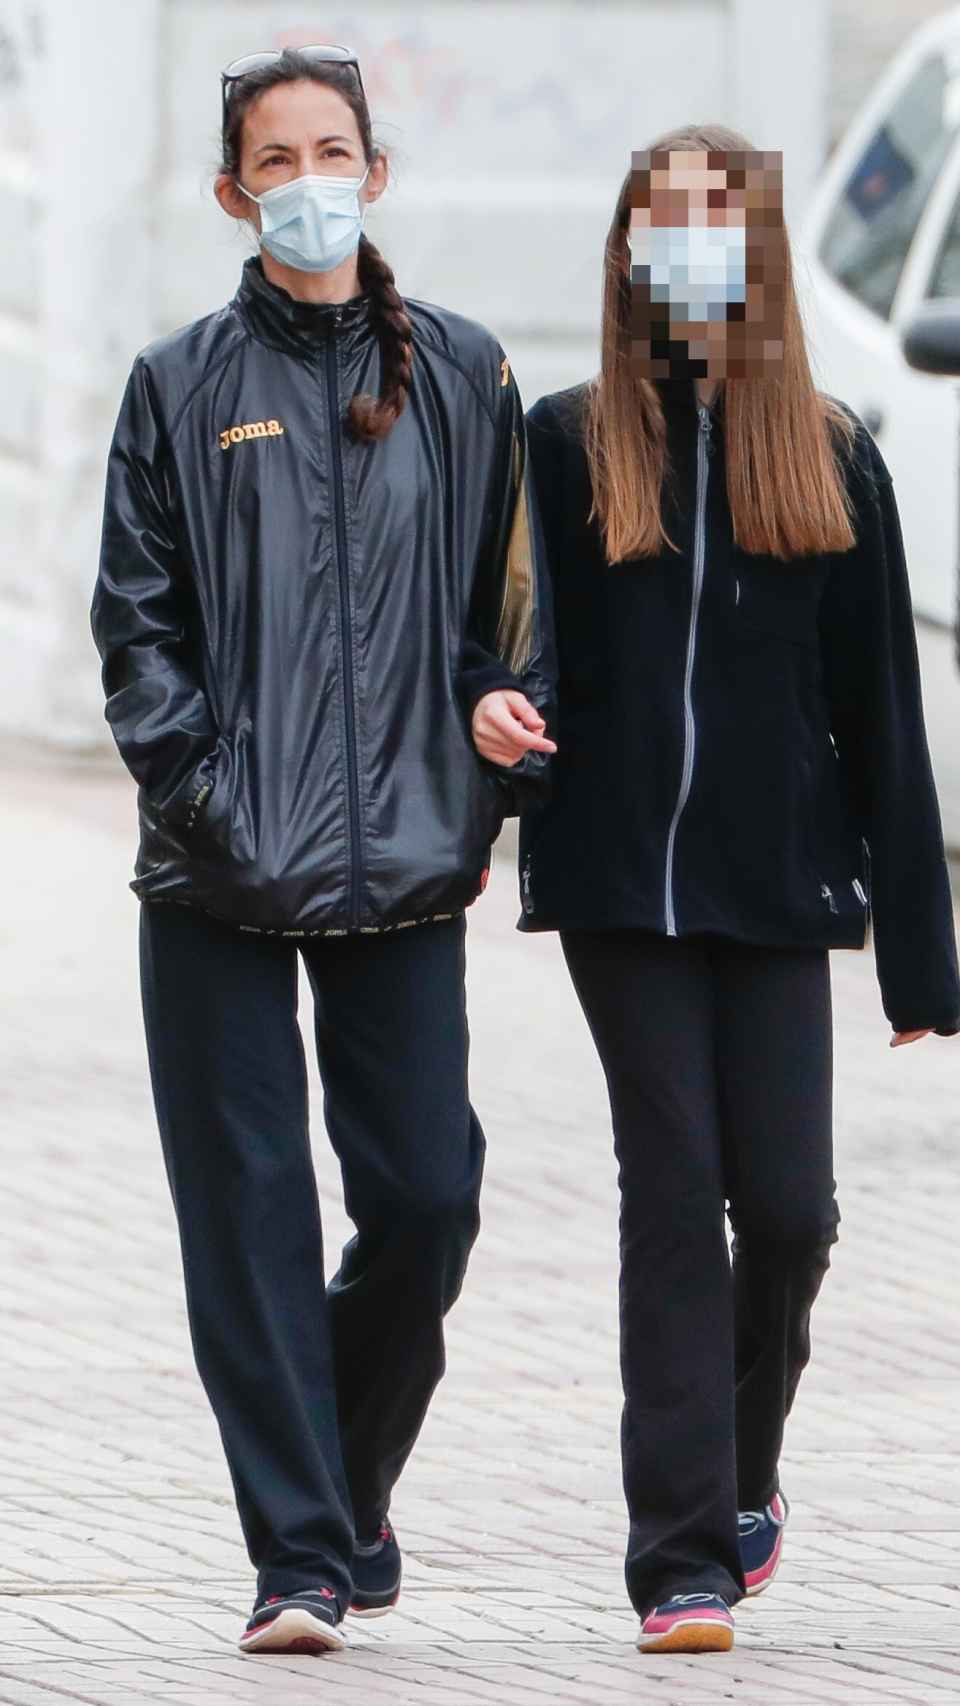 Telma junto a su hija Amanda caminando por Madrid el pasado mes de febrero.